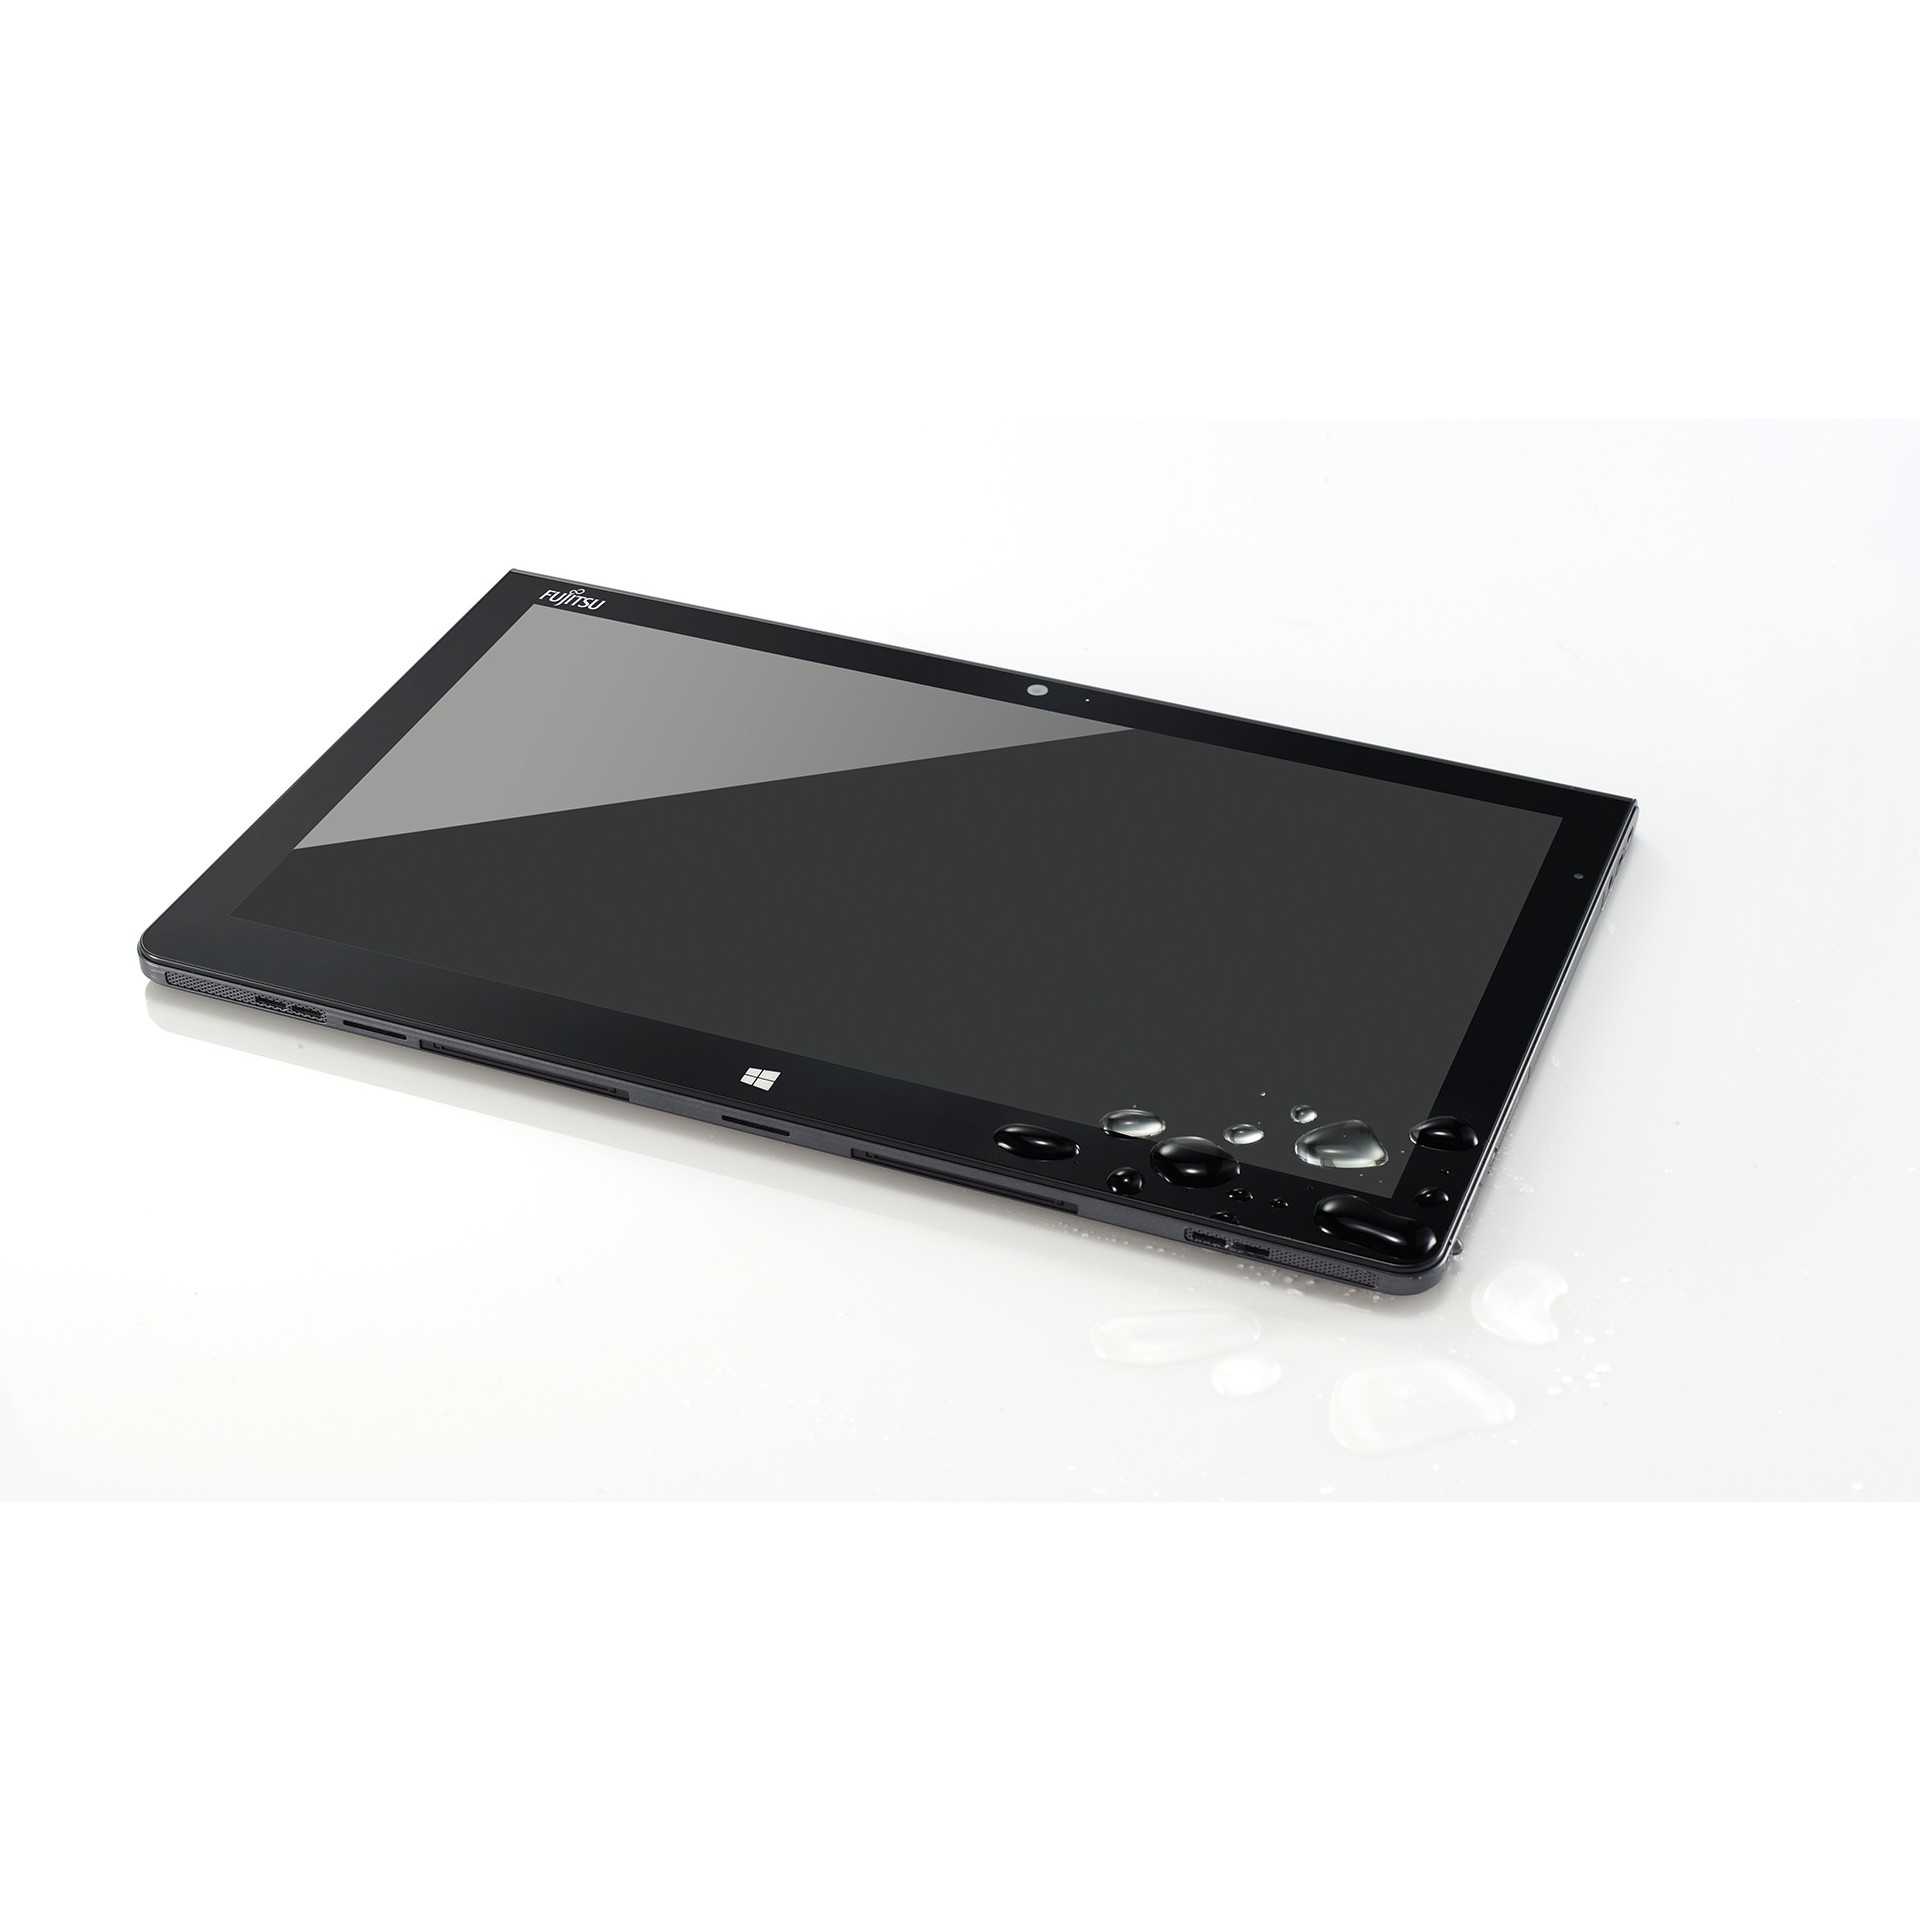 Fujitsu stylistic q572 64gb win8 amd z-60 купить по акционной цене , отзывы и обзоры.